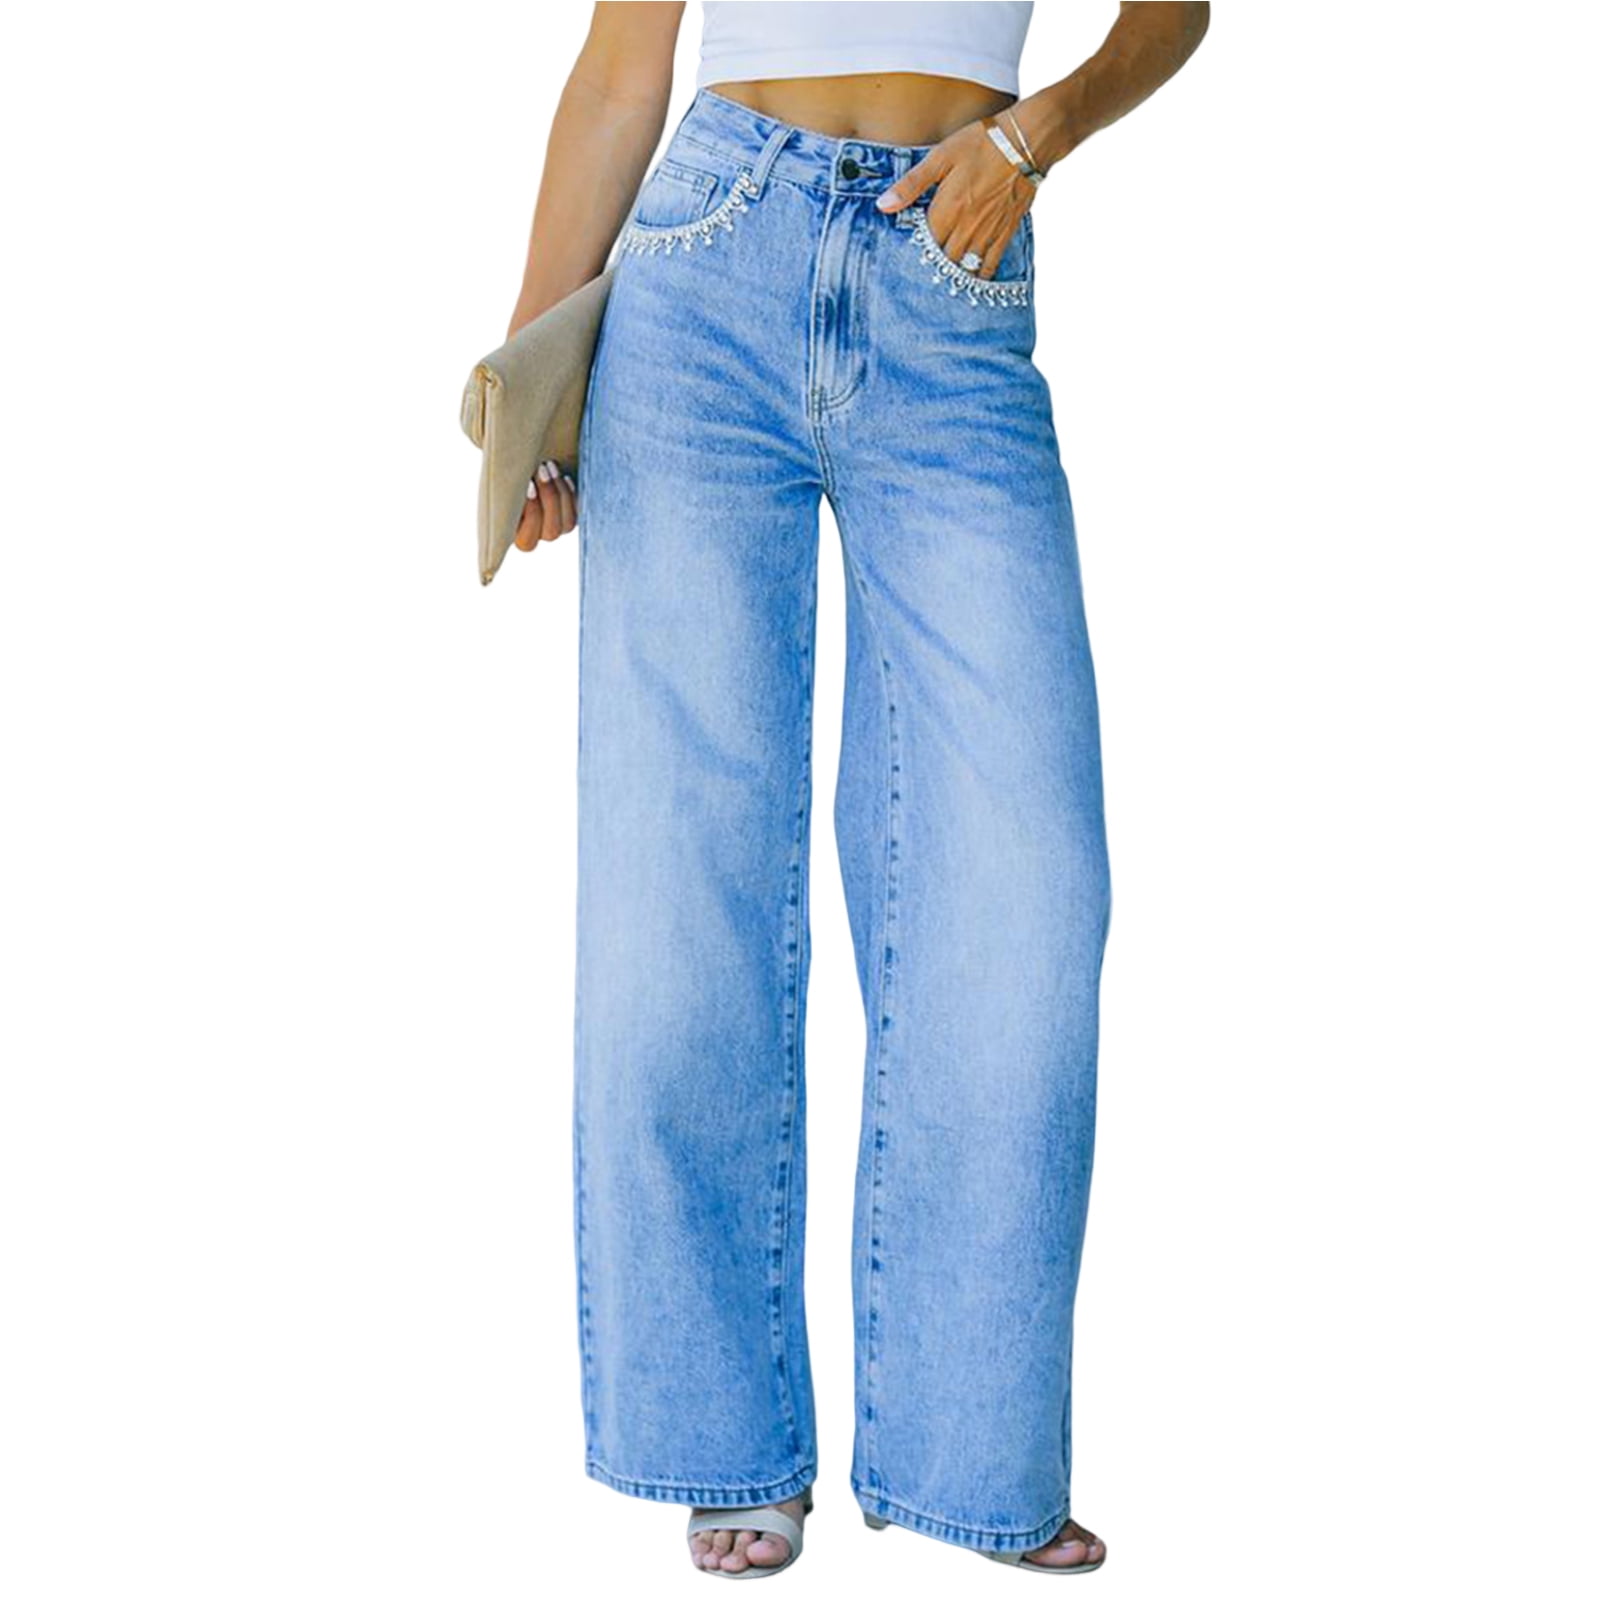 PERZOE Jeans Waist Petal Pockets Button Zipper Fly Women Jeans Straight Wide Leg Washed Casual Denim Pants Streetwear - Walmart.com